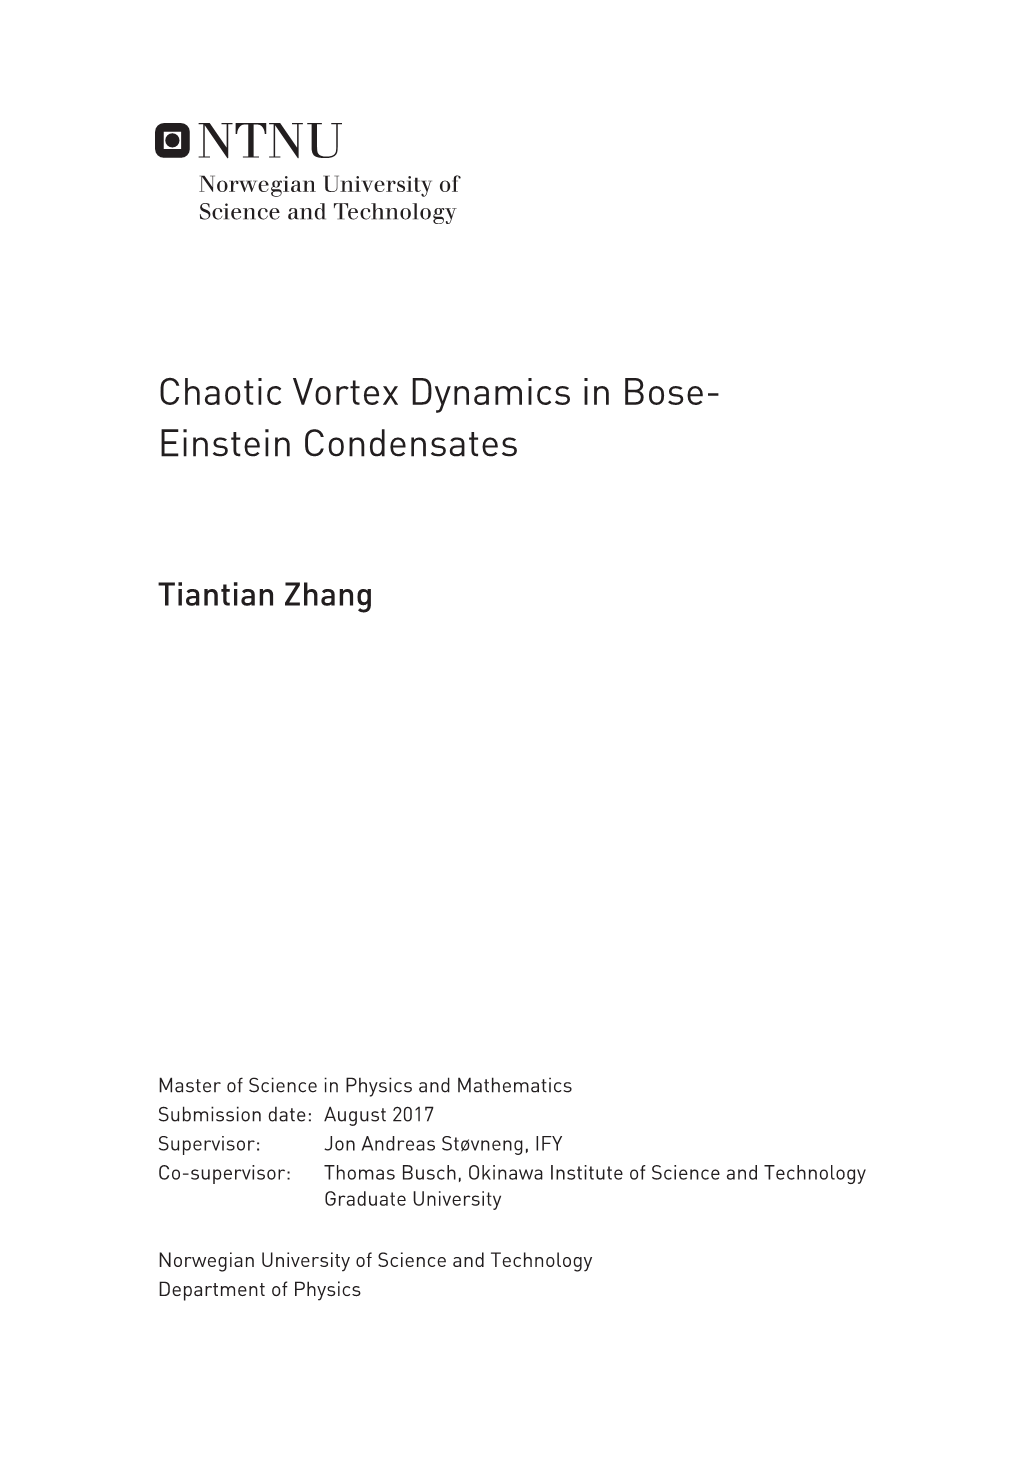 Chaotic Vortex Dynamics in Bose-Einstein Condensates